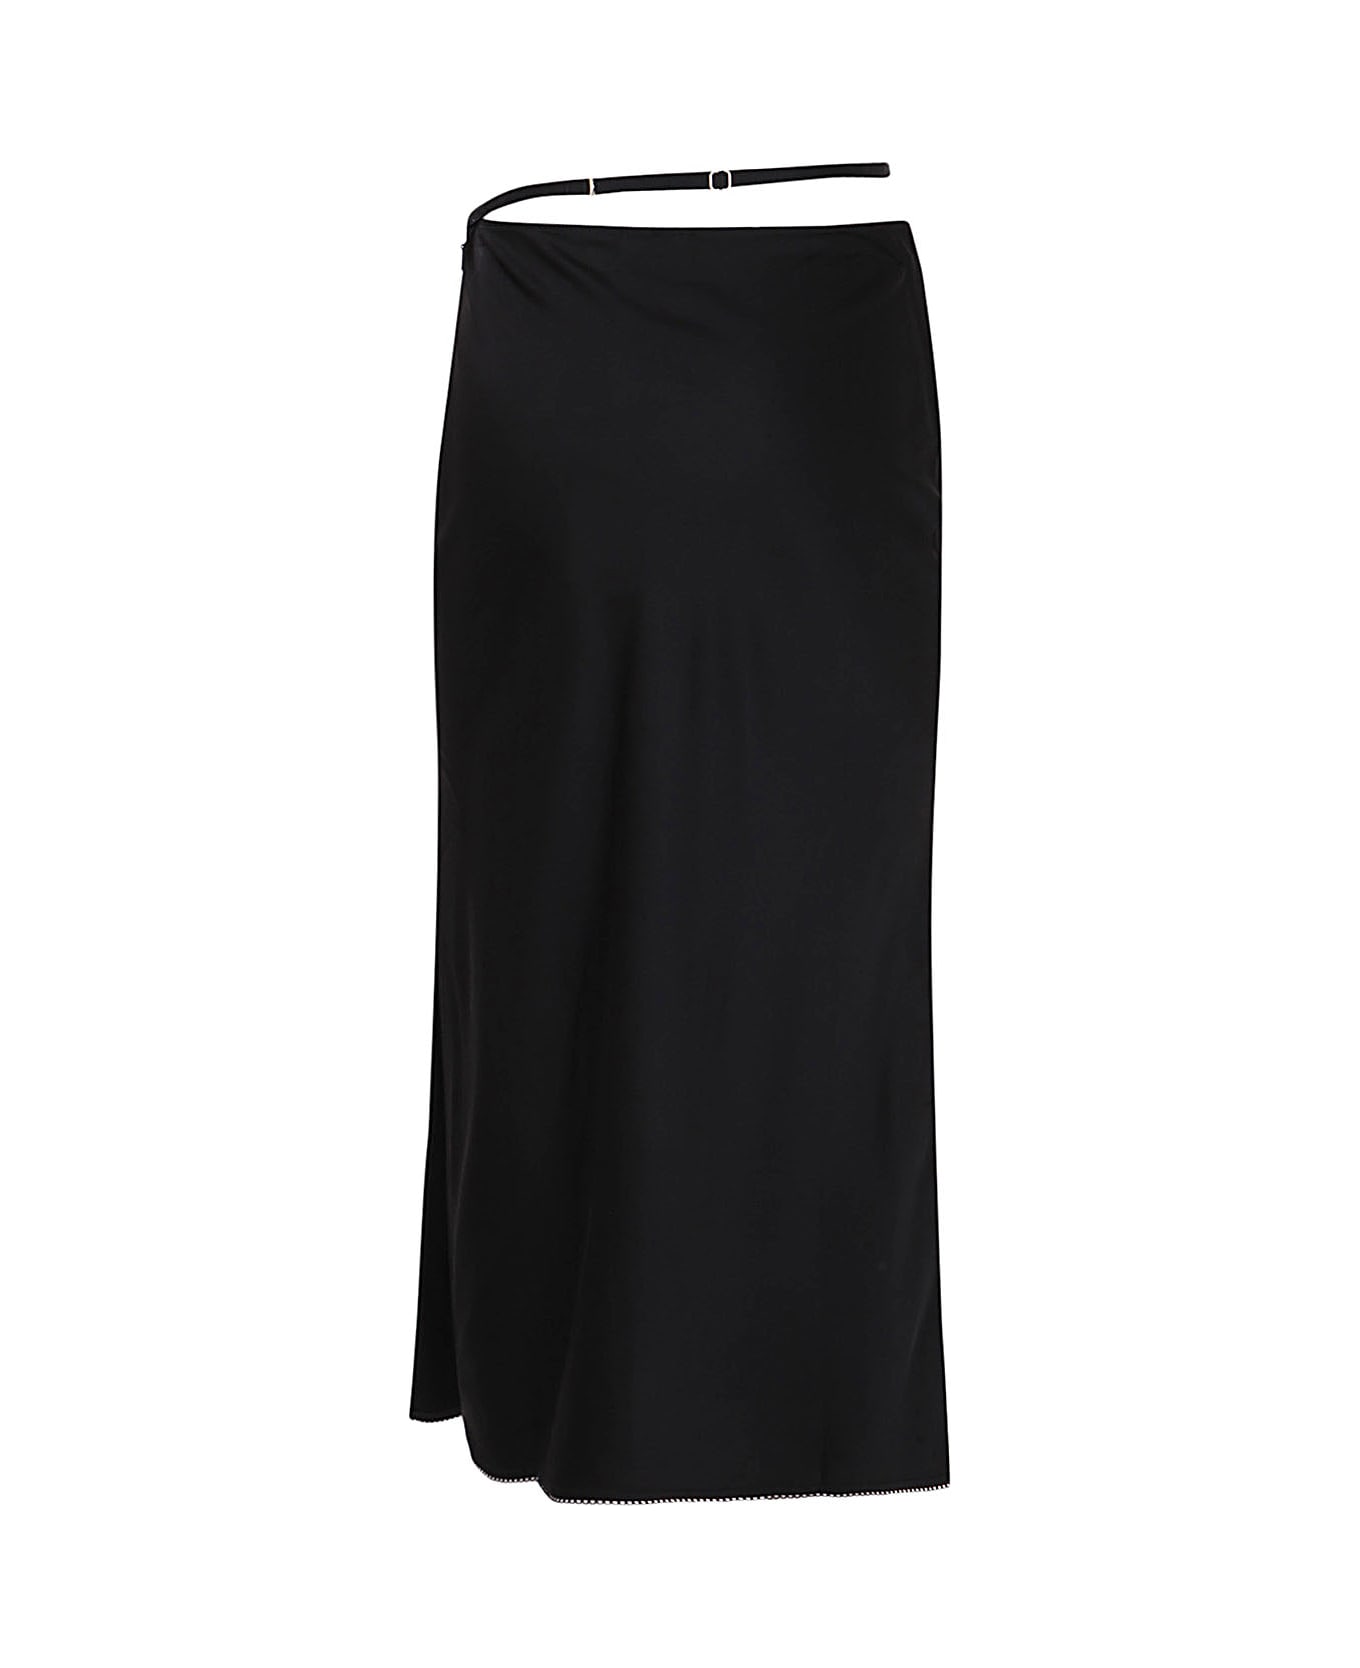 Jacquemus La Jupe Skirt - Black